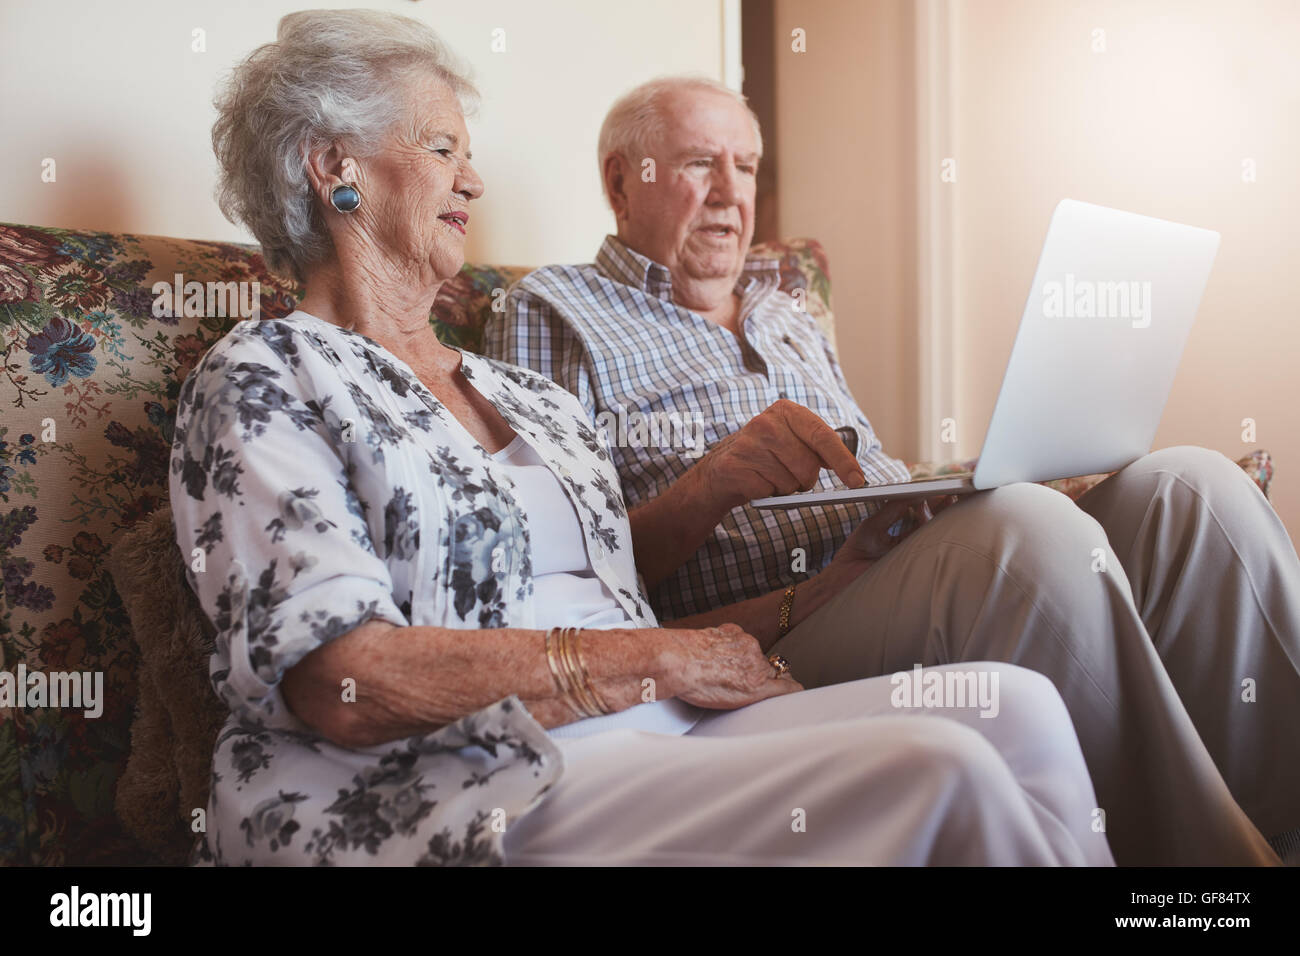 Piscina colpo di coppia senior seduta su un divano con un computer portatile. Il vecchio uomo e donna relax su un divano utilizzando laptop. Foto Stock